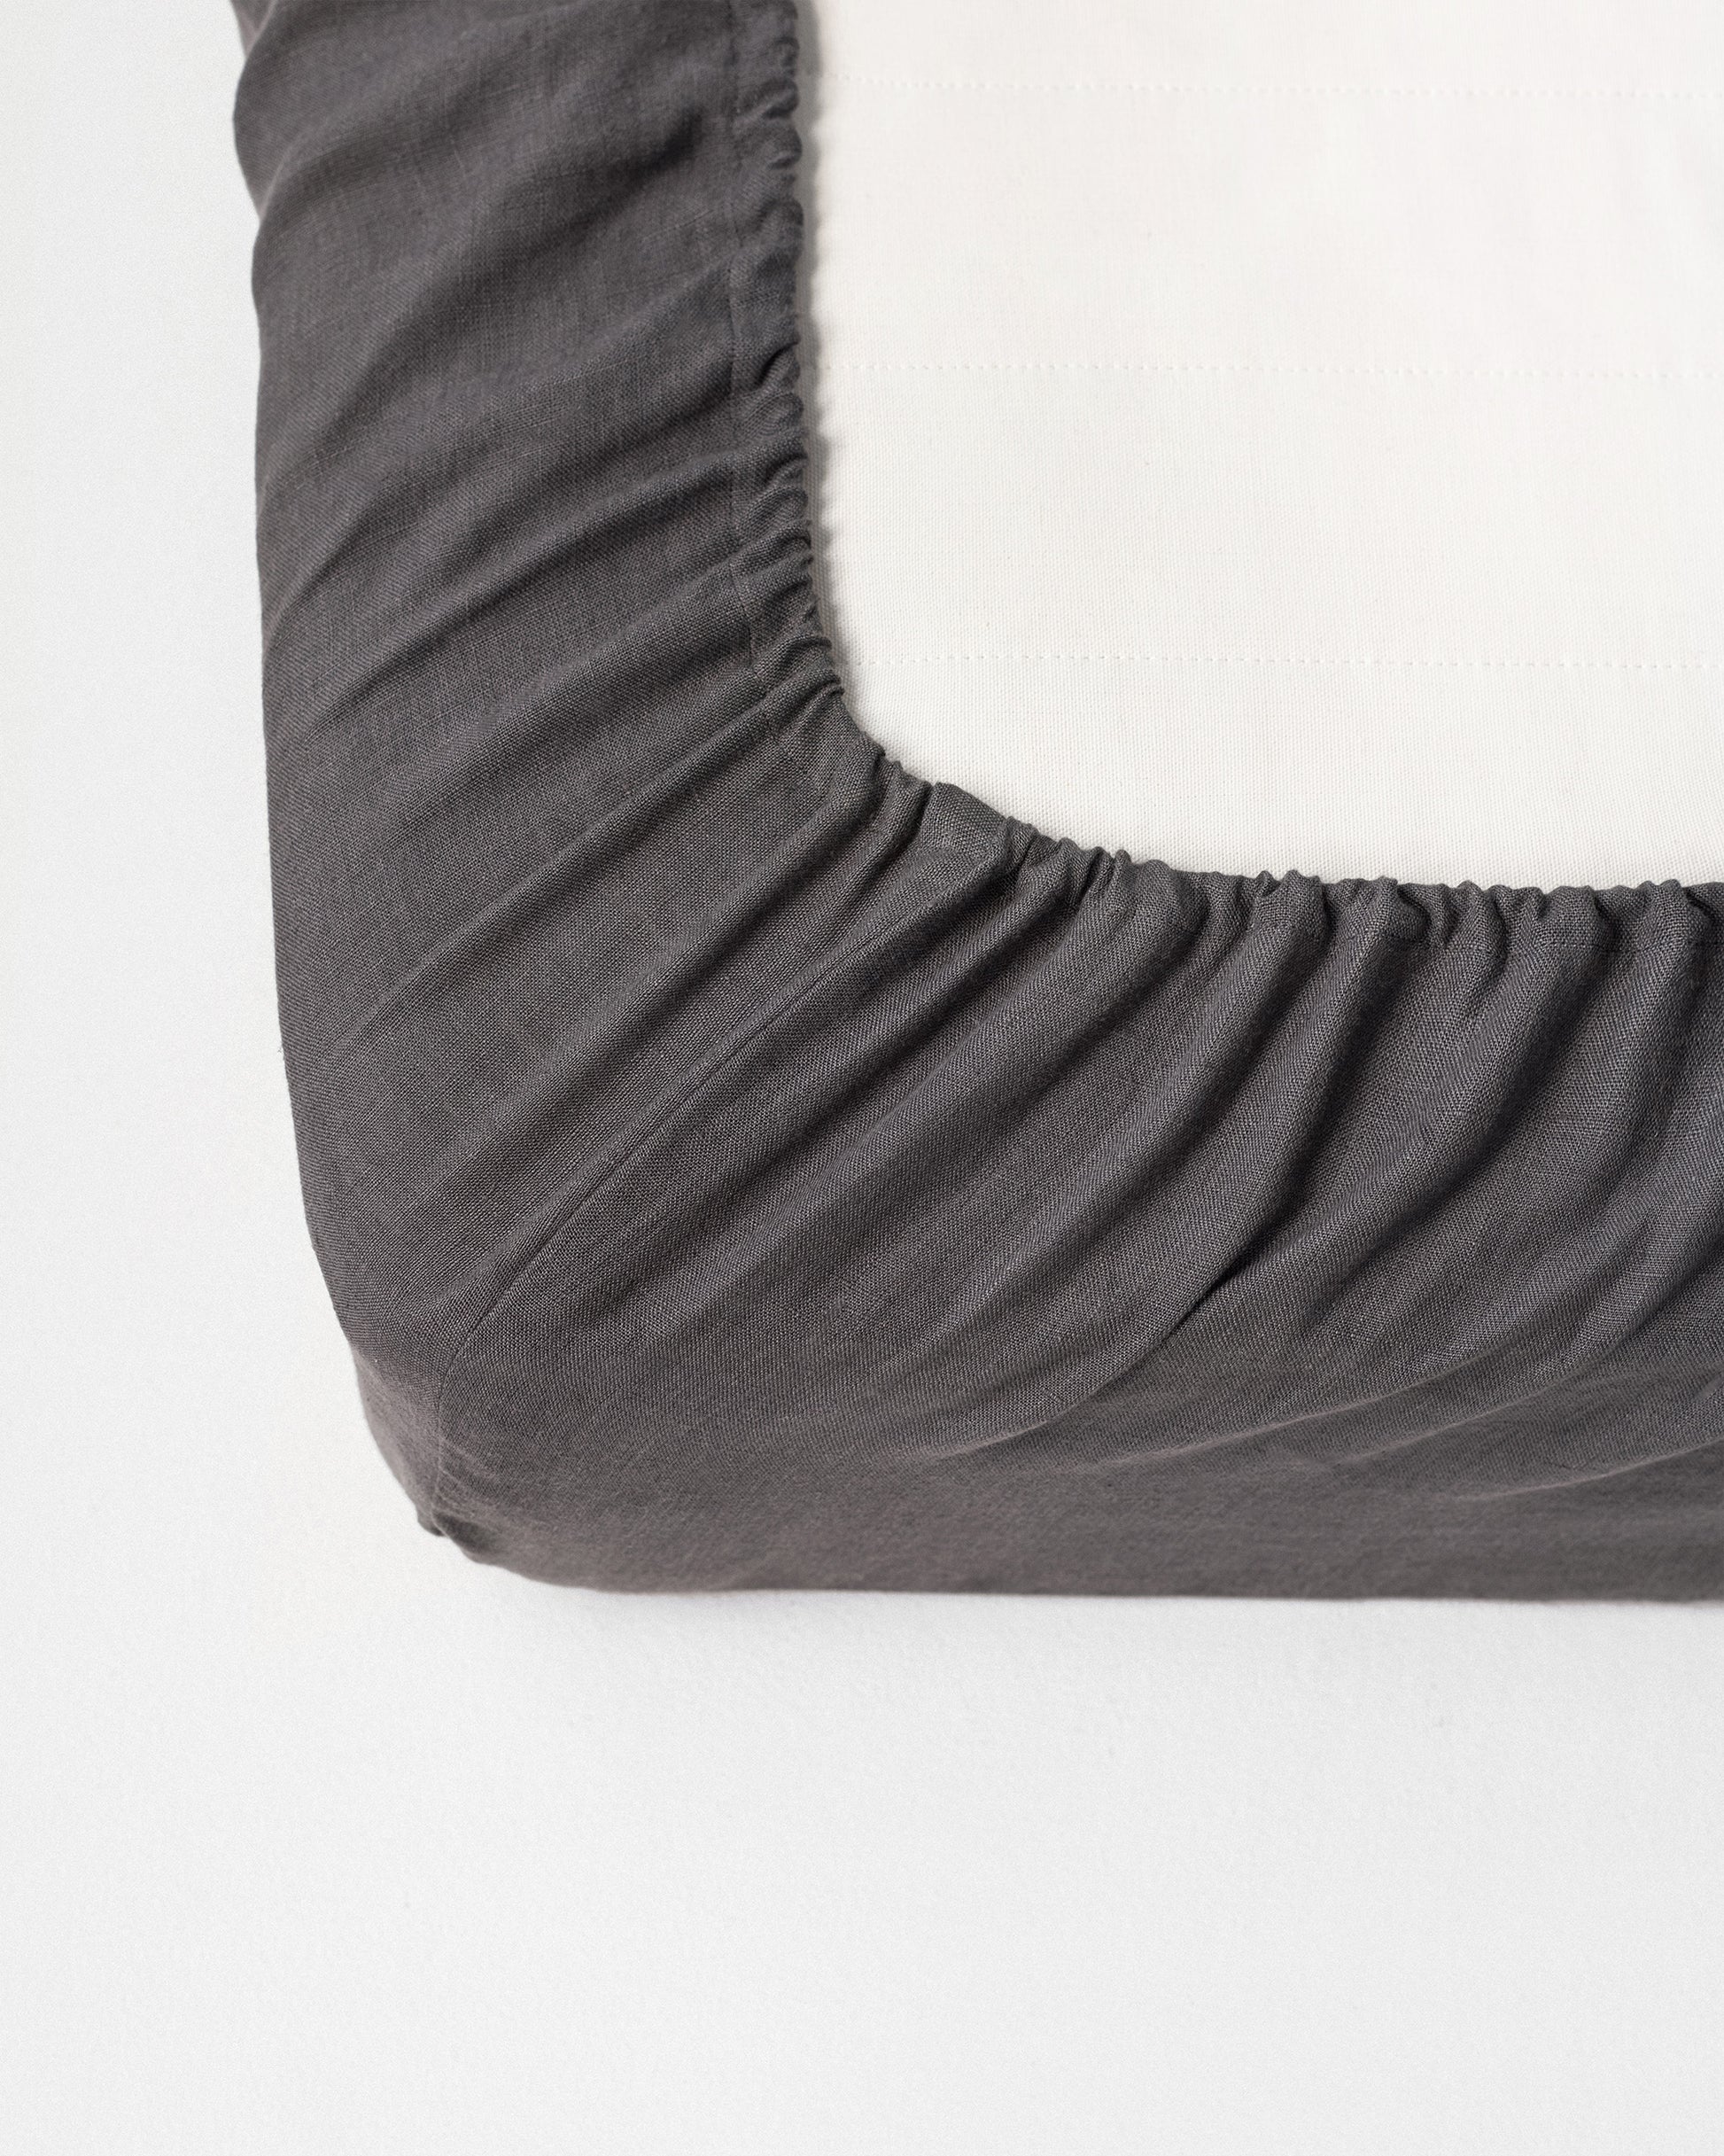 Charcoal gray linen fitted sheet - MagicLinen